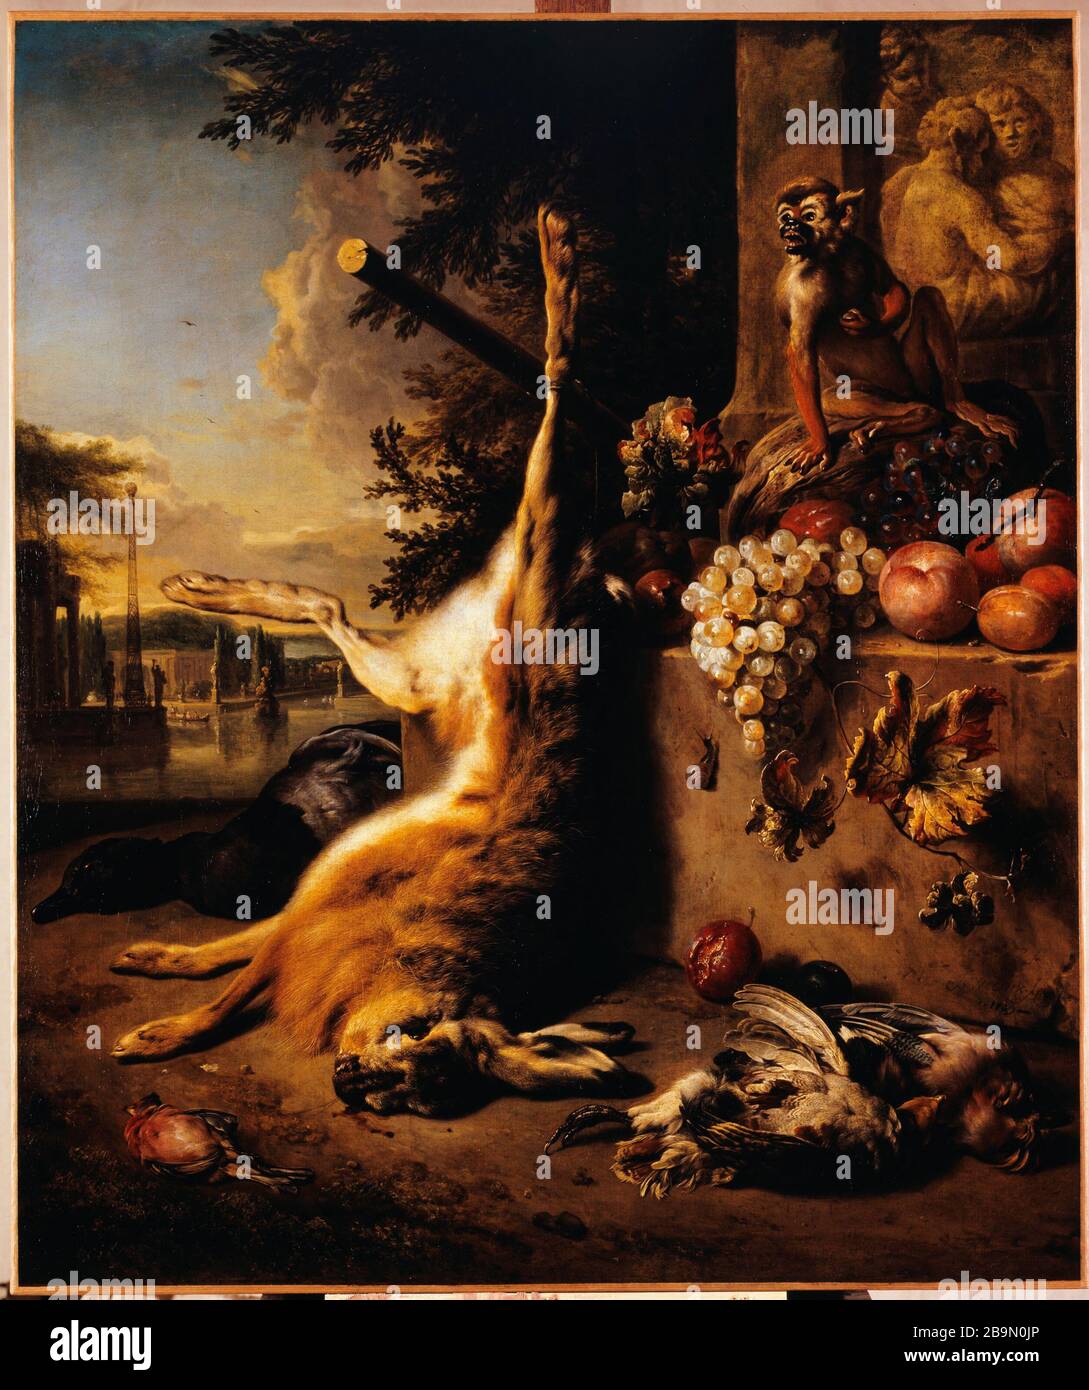 Game death, monkey and fruit before a landscape Jan Weenix (1621-1661). 'Gibier mort, singe et fruits devant un paysage'. Huille sur toile. 1709. Musée des Beaux-Arts de la Ville de Paris, Petit Palais. Stock Photo